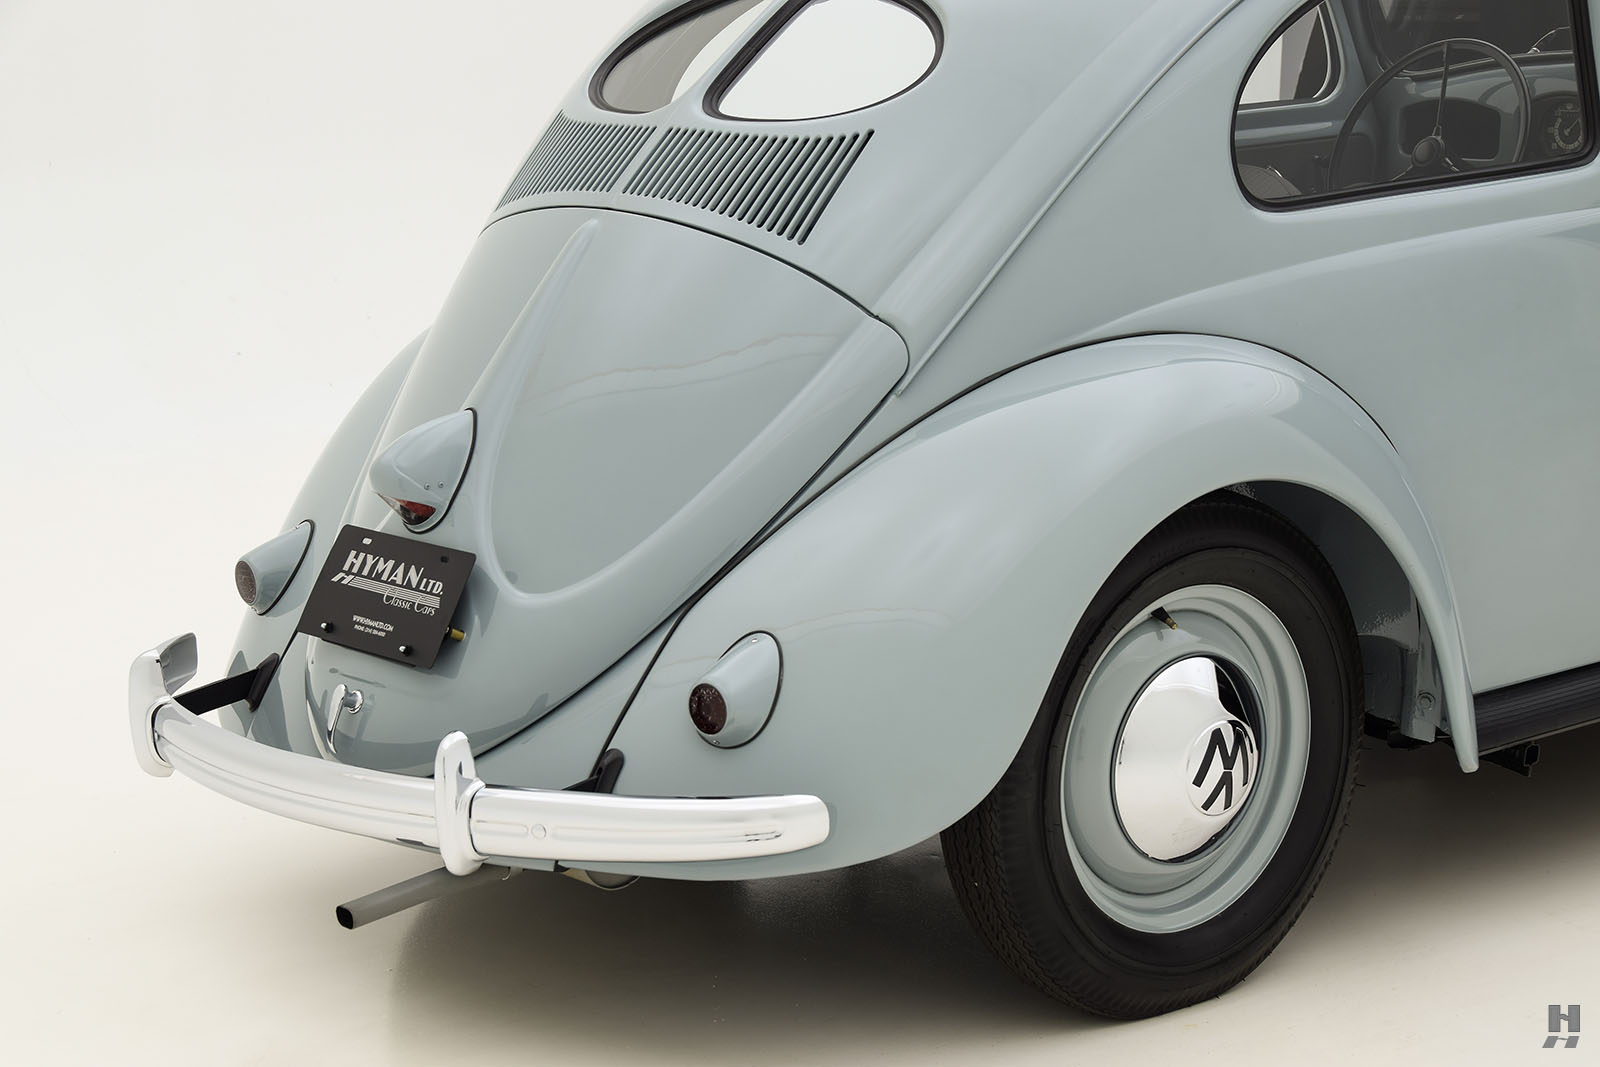 1954 volkswagen beetle deluxe